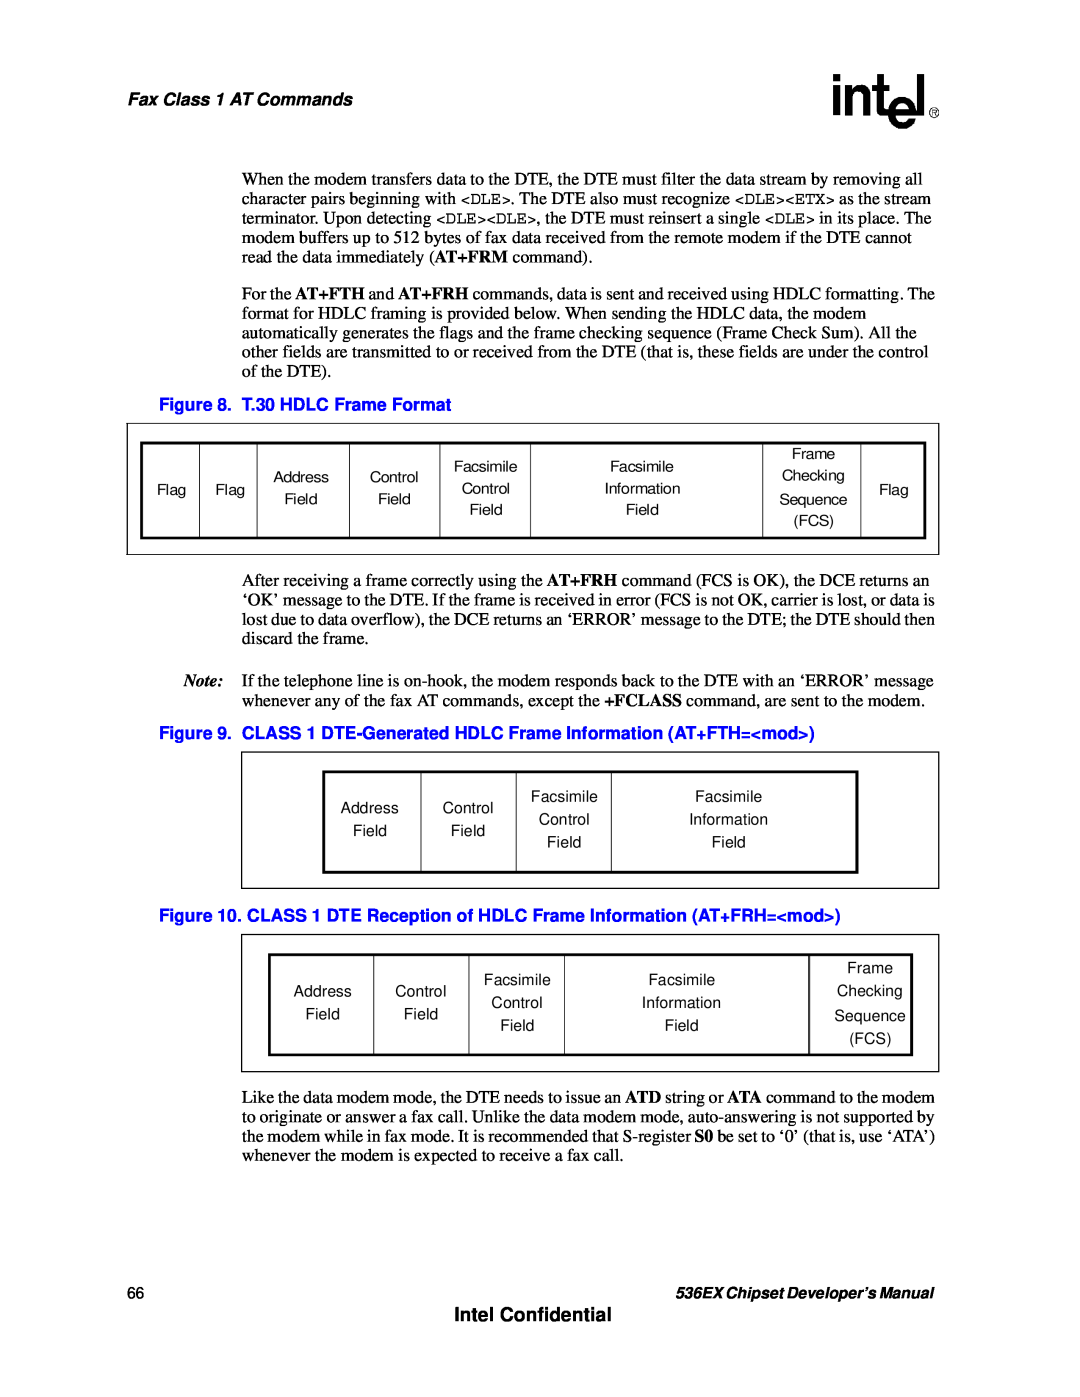 Intel 536EX manual Intel Confidential, Fax Class 1 AT Commands, T.30 HDLC Frame Format 